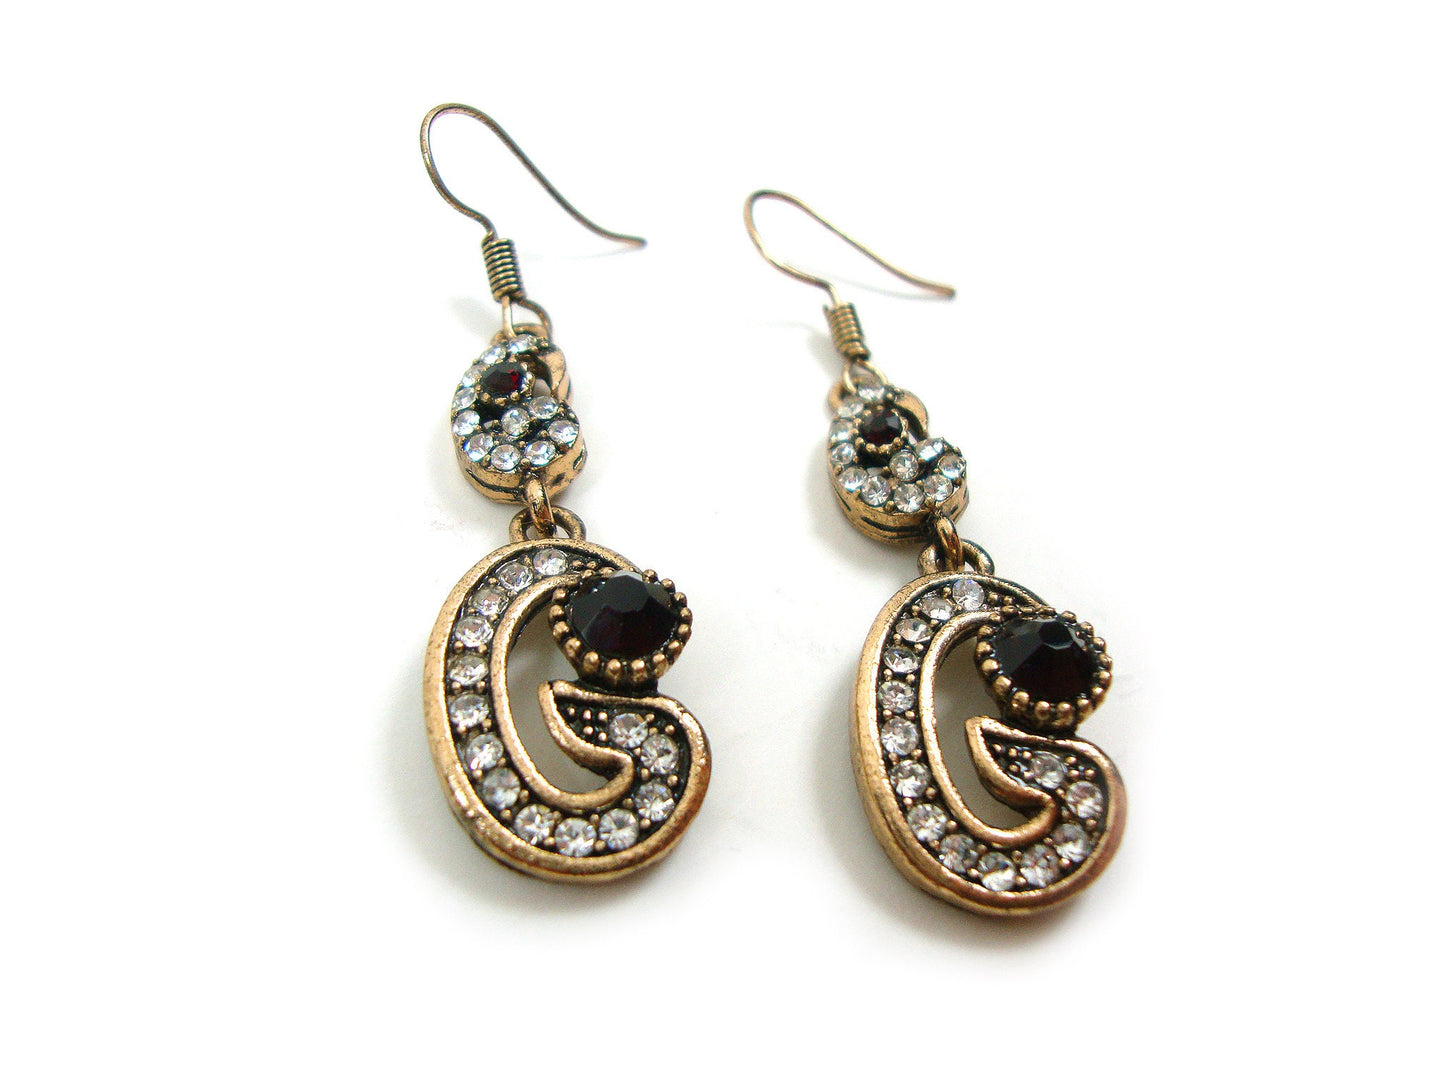 Byzantine Earrings, Modern Style Dark Red Crystal Stones Dangle Swirl Shape Earrings, Ethnic Antique Earrings, Greek Turkish Earrings Dangle